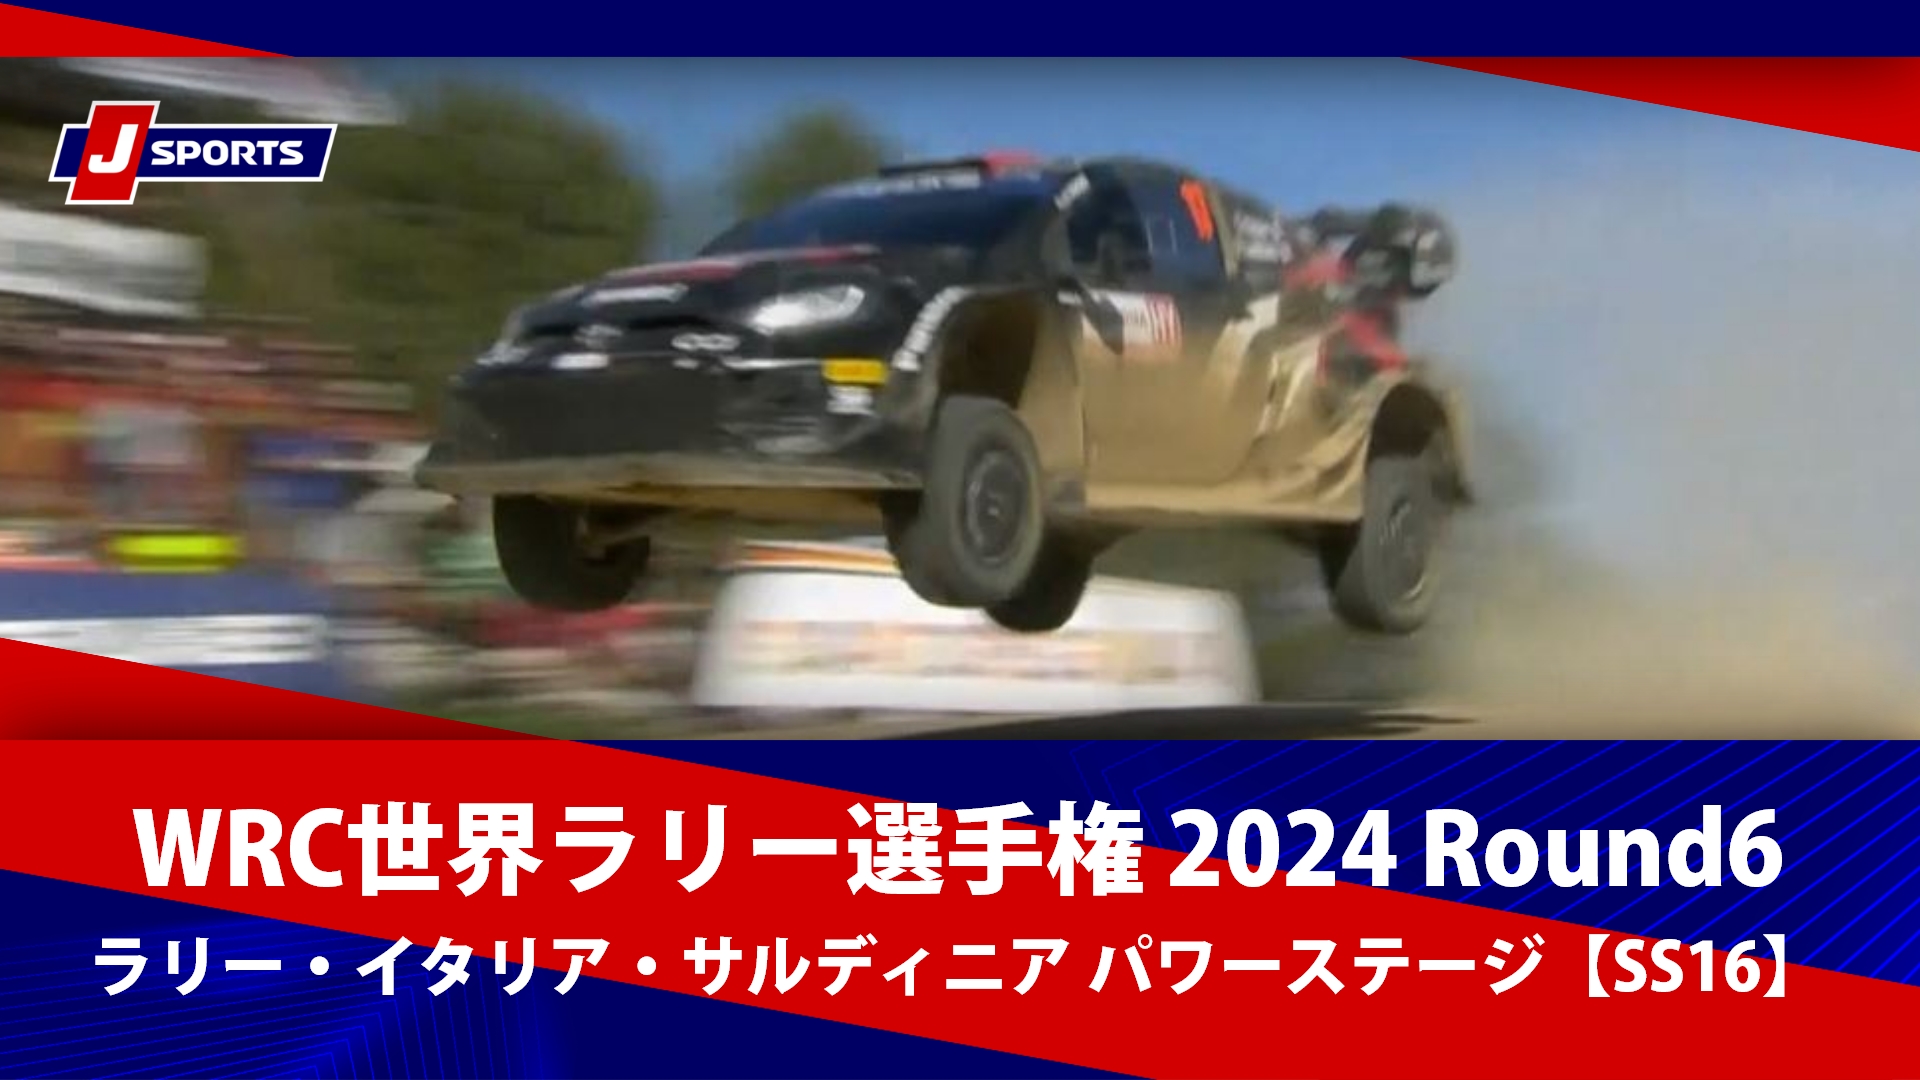 【ハイライト】WRC世界ラリー選手権 2024 Round6 ラリー・イタリア・サルディニア パワーステージ【SS16】 #wrc